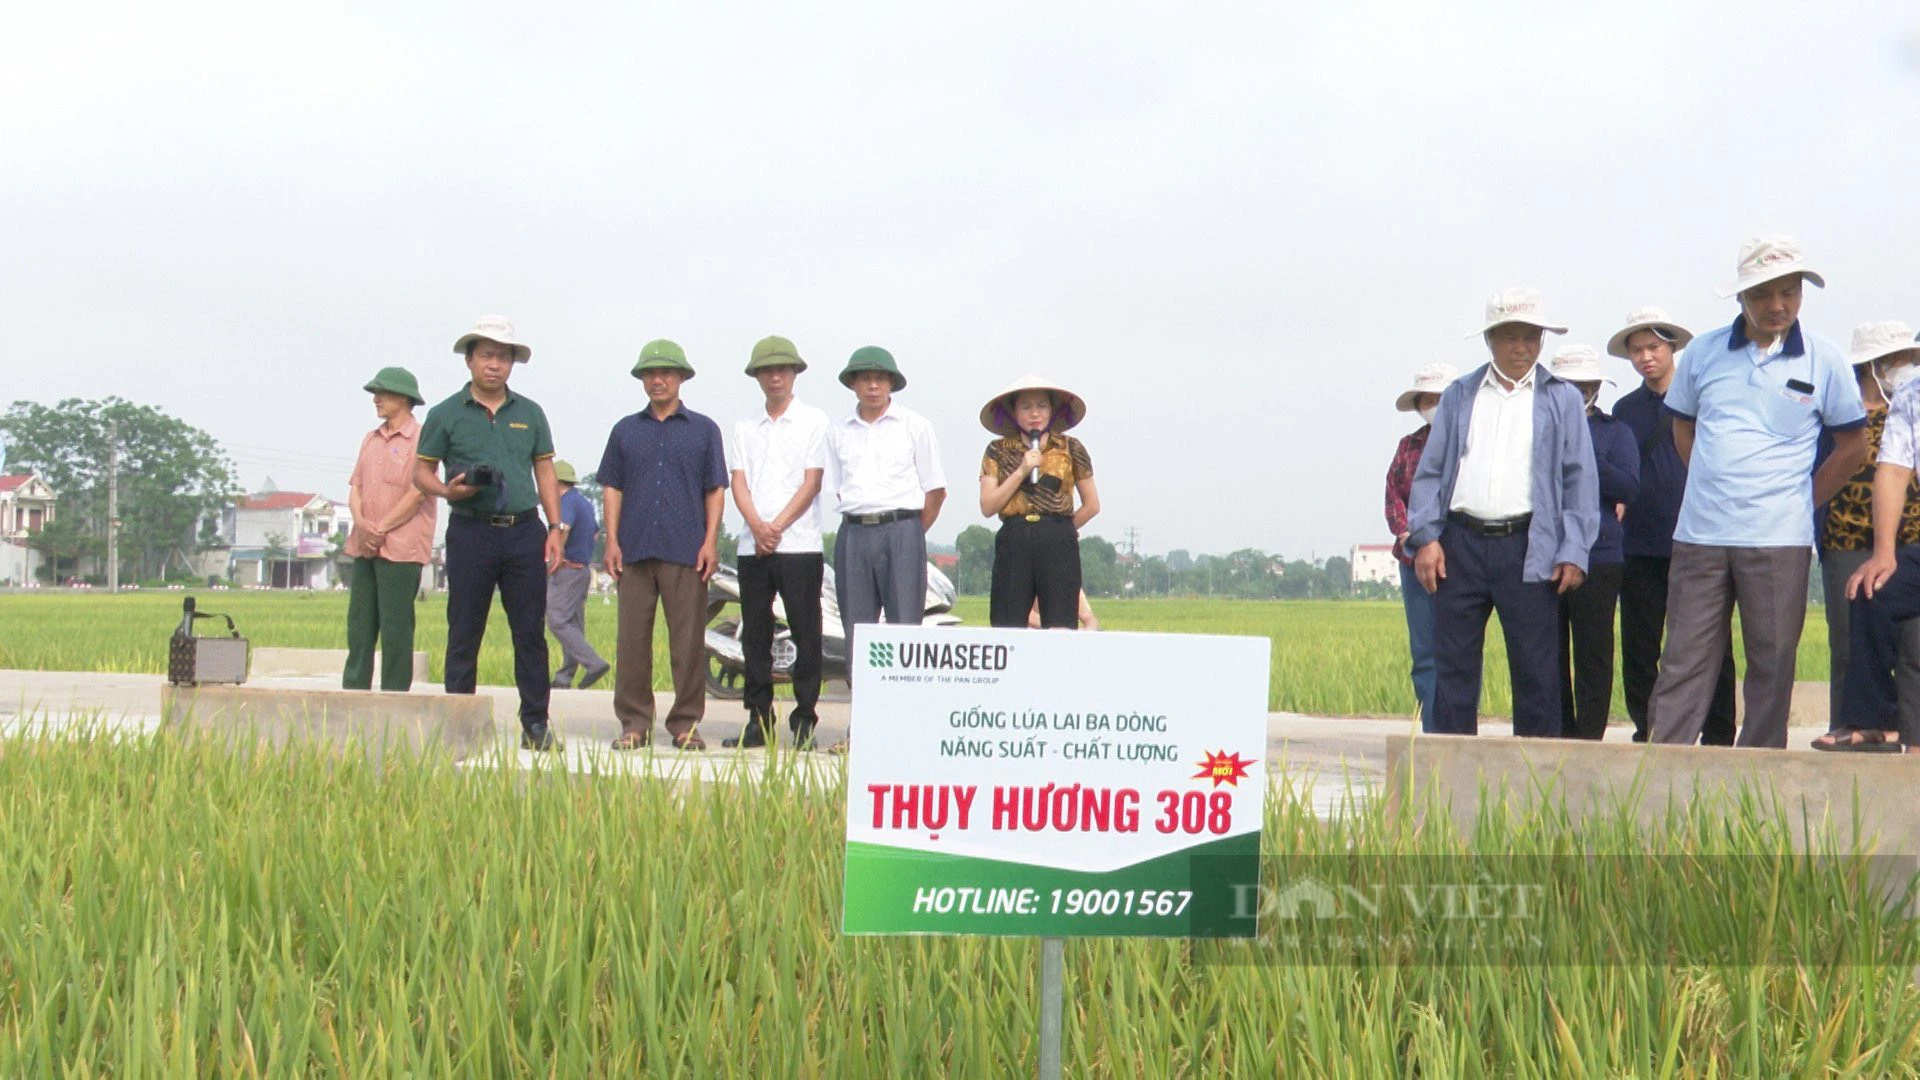 Mưa bão liên tục, lúa Thụy Hương 308 trồng tại Phú Thọ vẫn cho năng suất cao, vụ xuân bội thu- Ảnh 1.